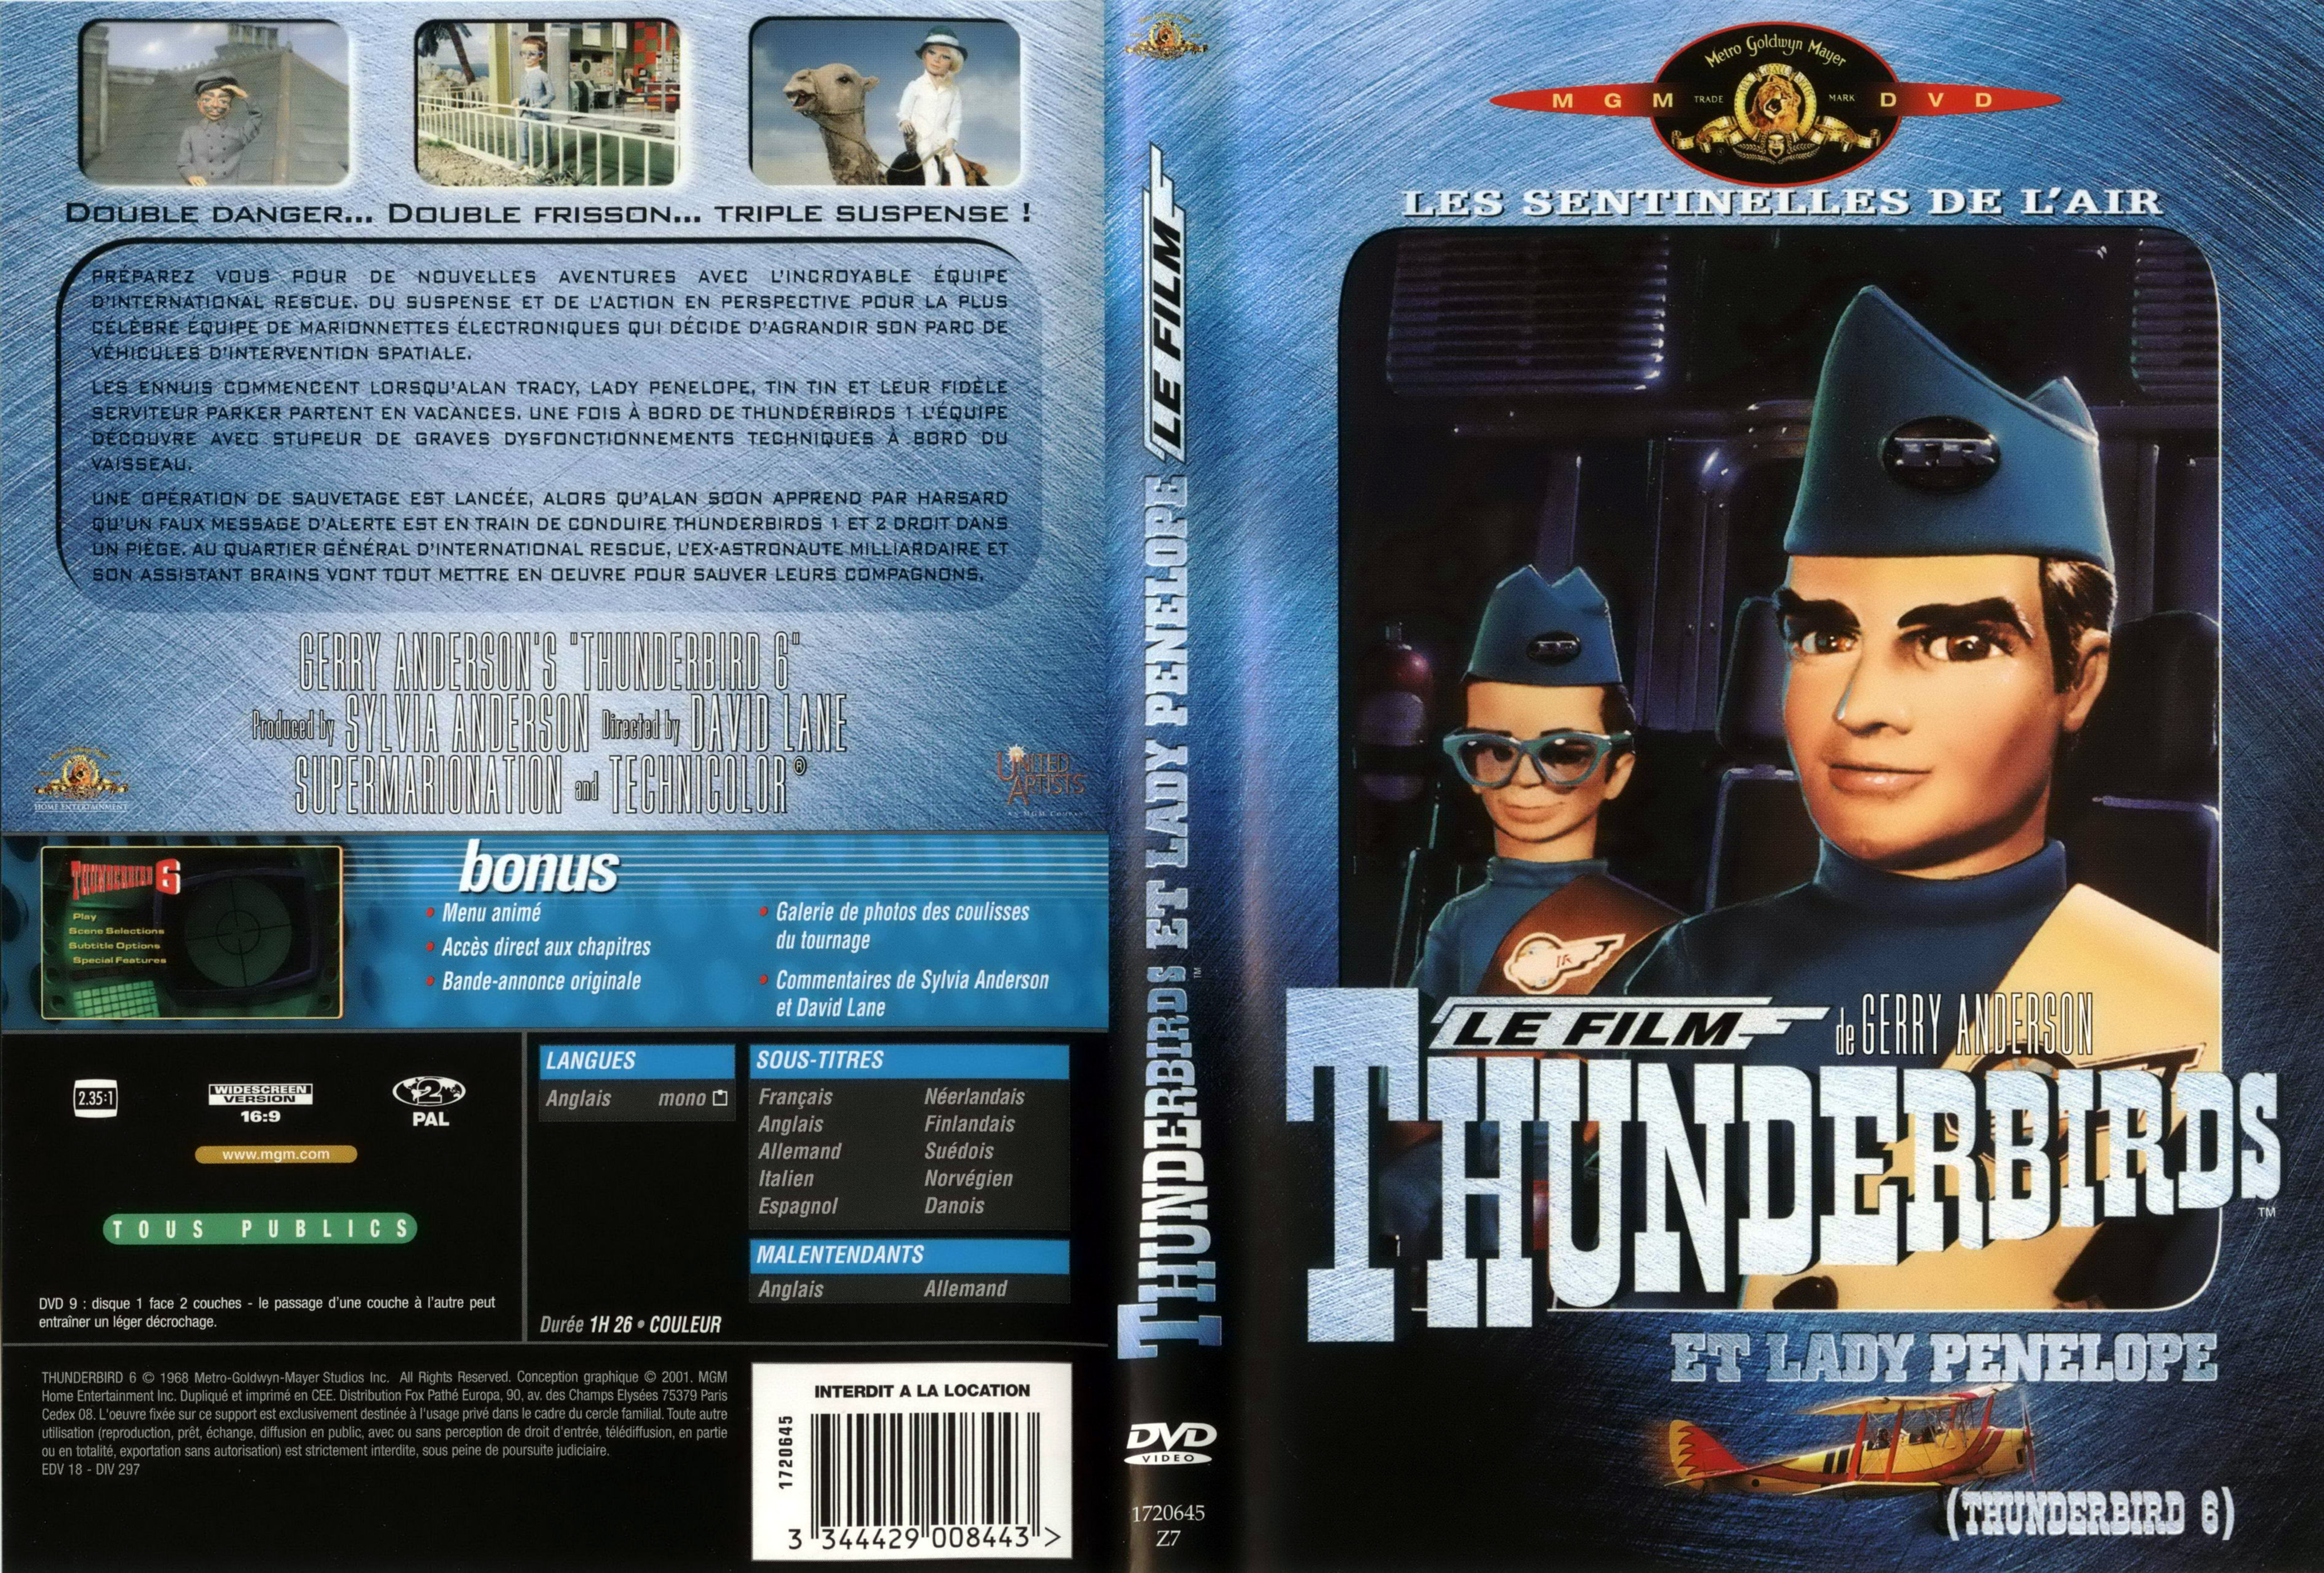 Jaquette DVD Thunderbirds et Lady Penelope